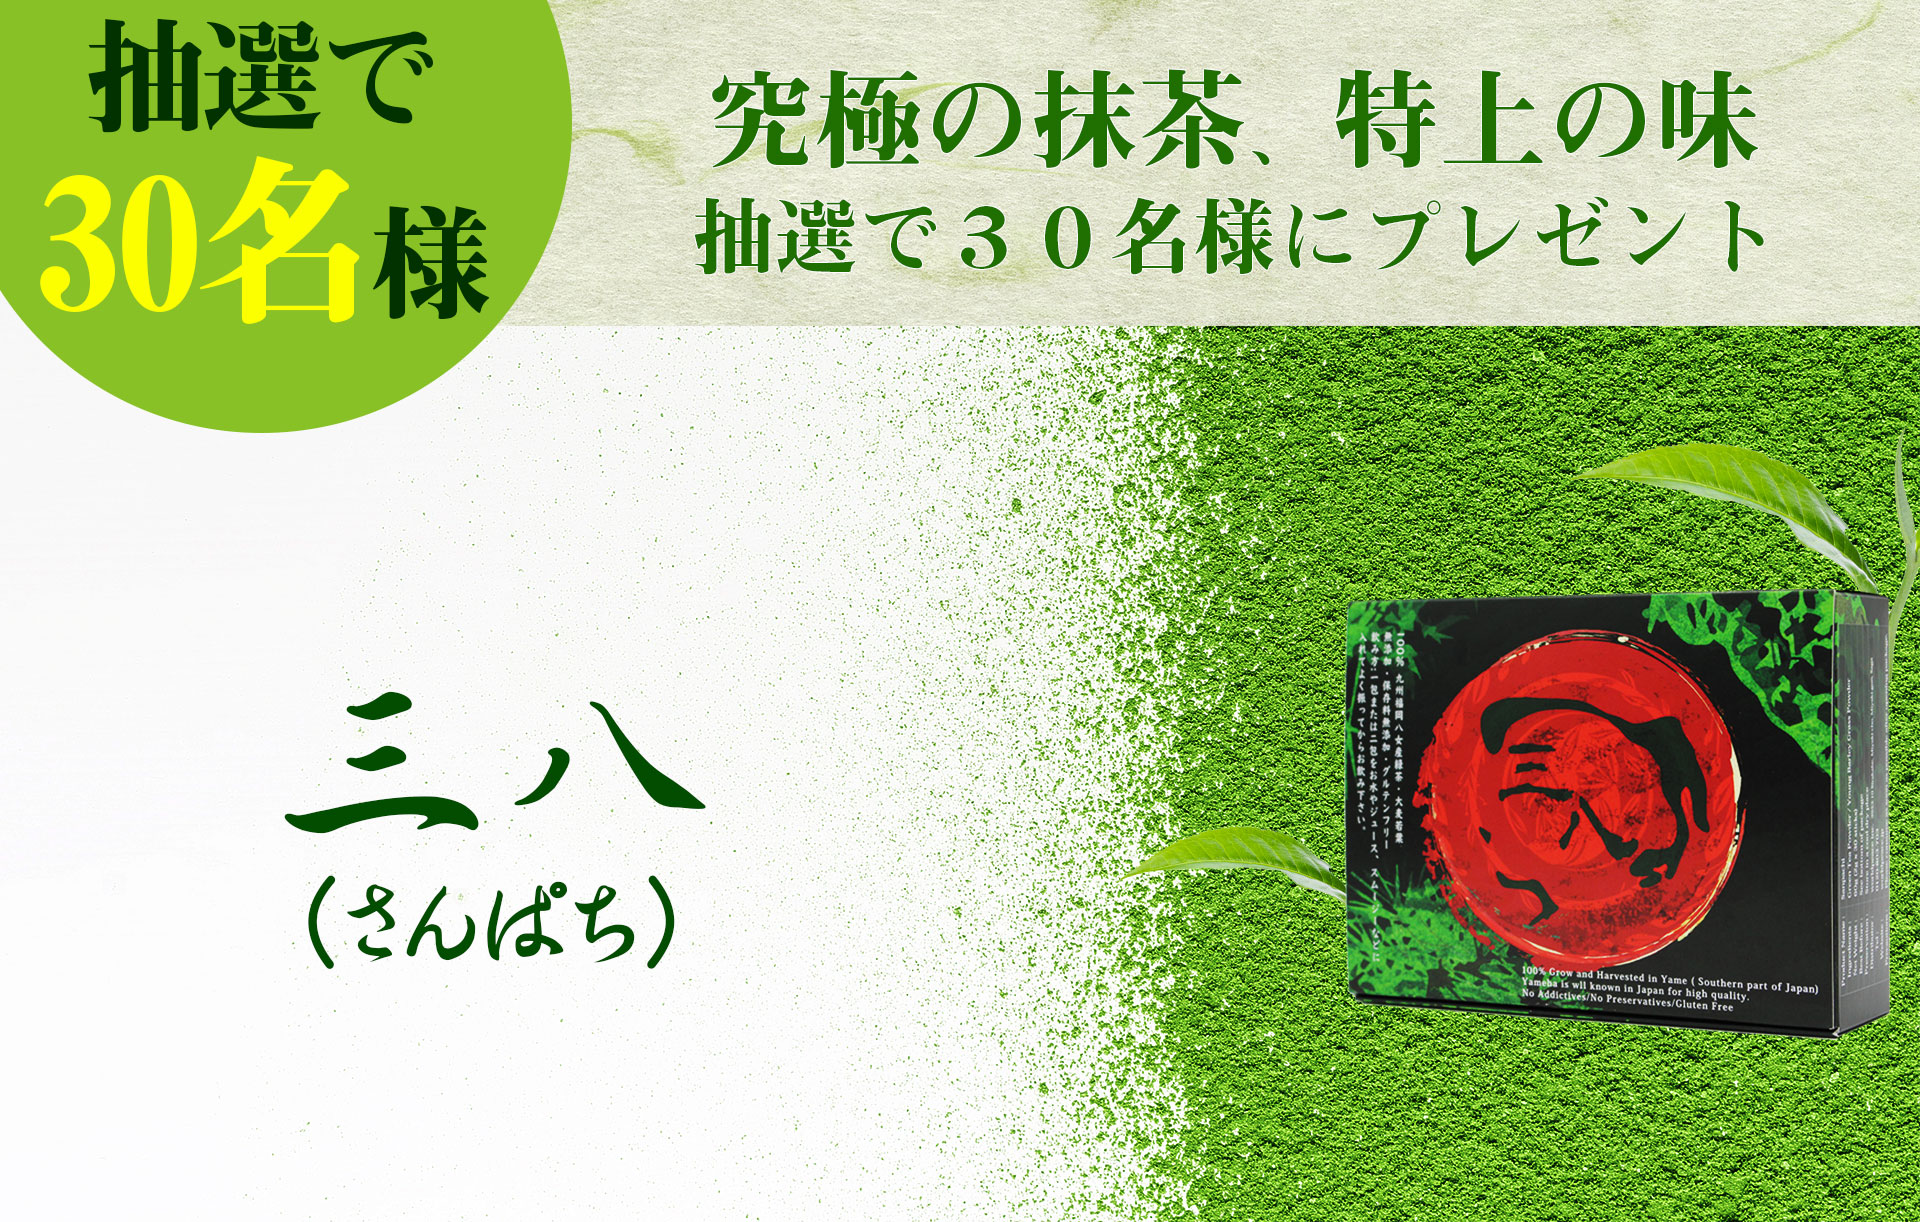 aojiru sanpachi matcha present gift yame cha green ocha japanese greenjuice